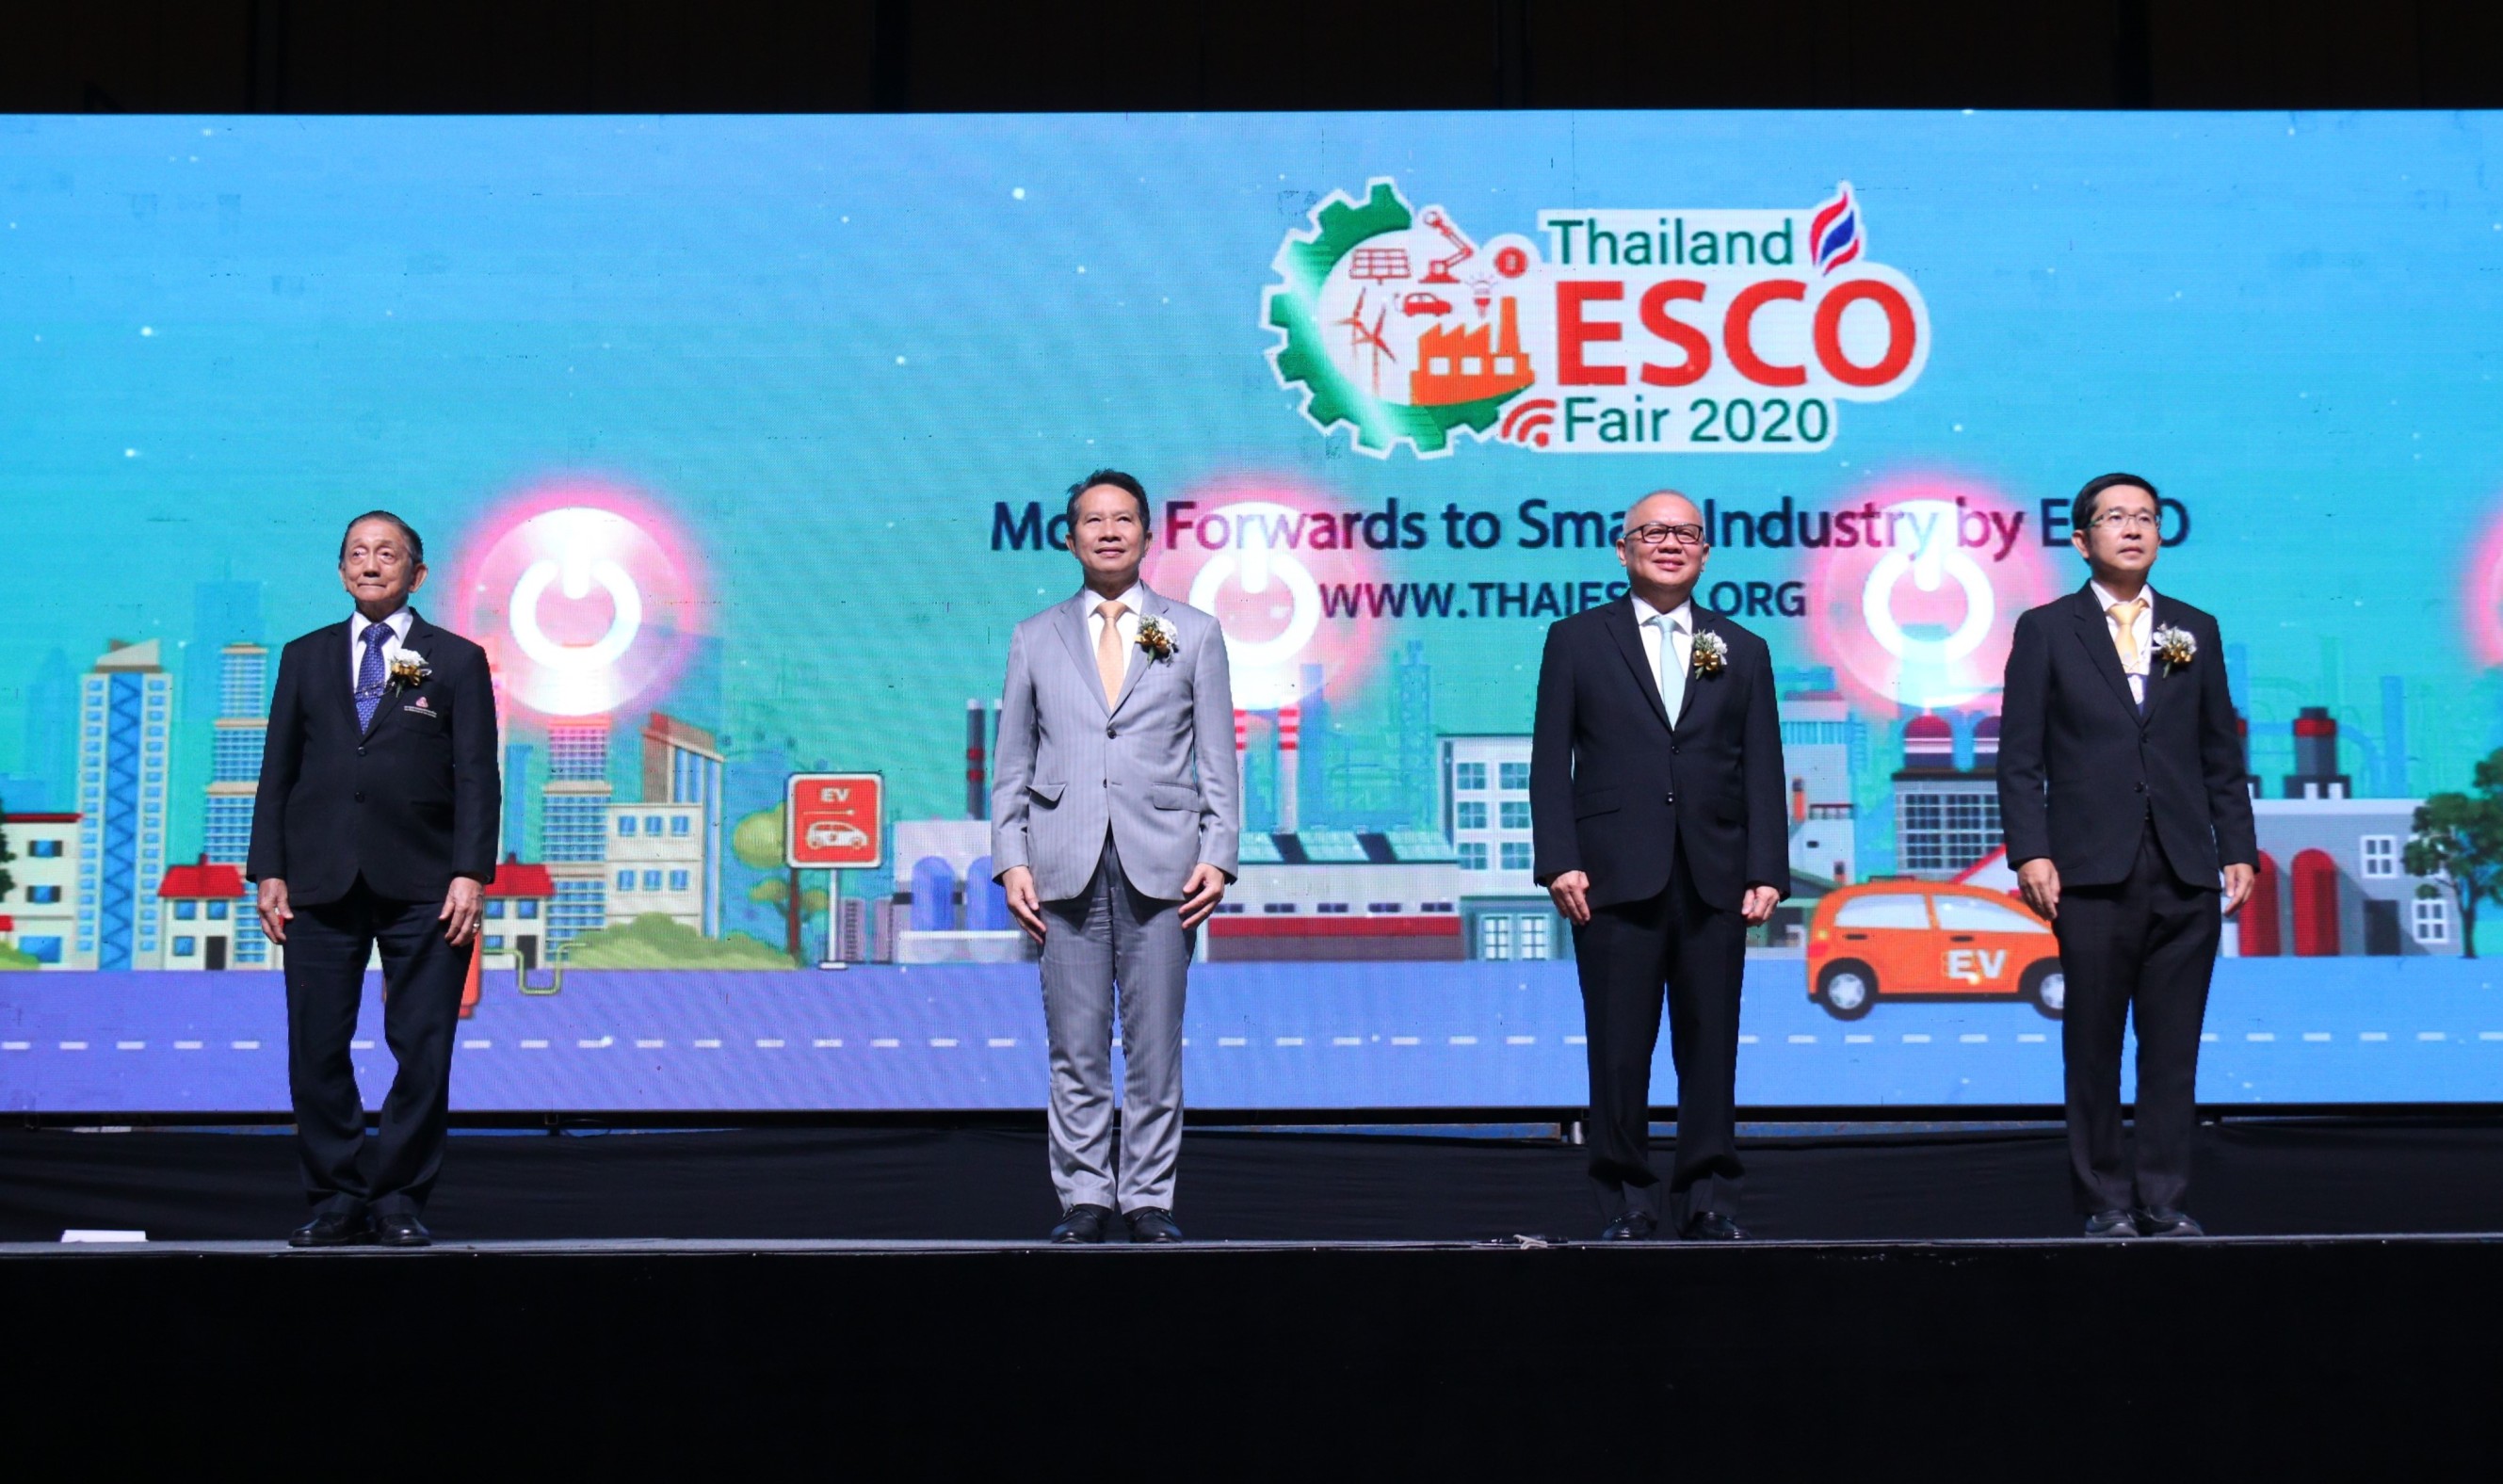 สถาบันพลังงาน-สภาอุตสาหกรรมร่วมกับ กระทรวงพลังงานจัด Thailand ESCO Fair 2020 หัวข้อ 